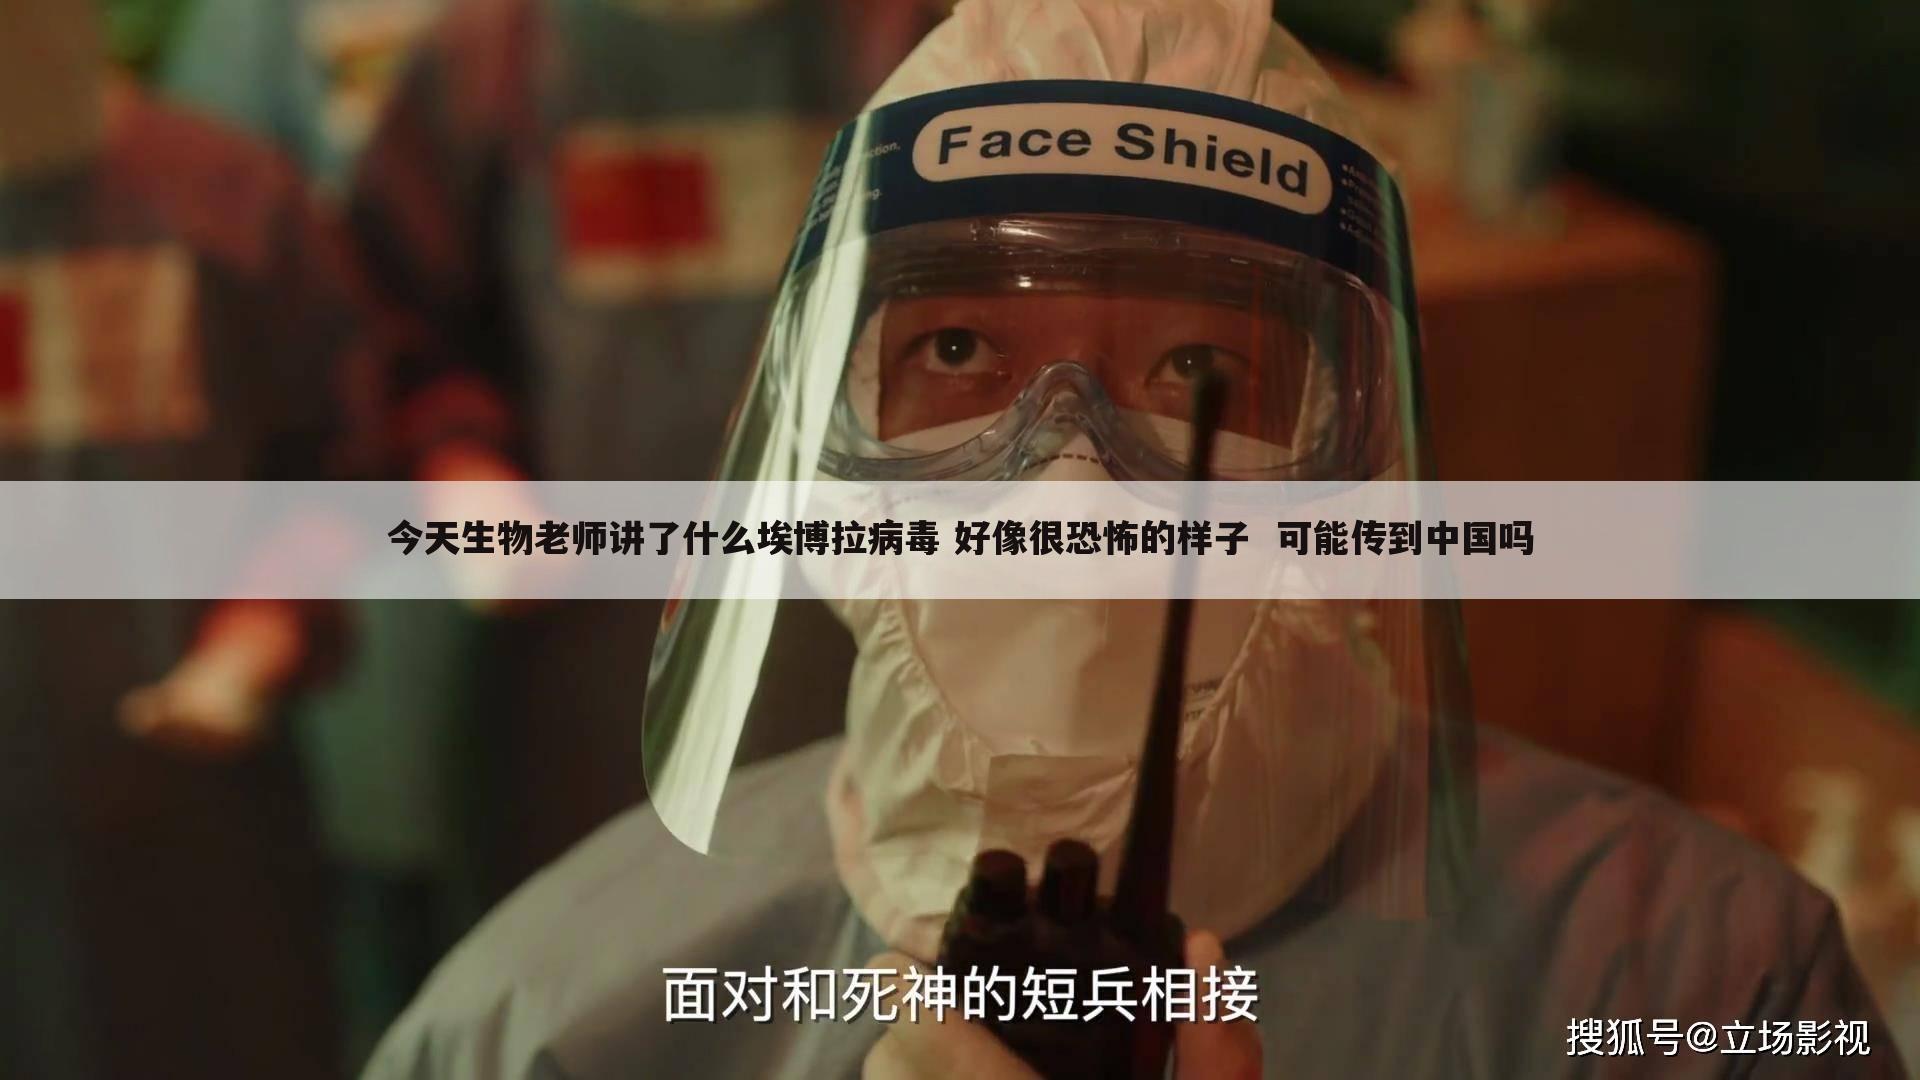 今天生物老师讲了什么埃博拉病毒 好像很恐怖的样子  可能传到中国吗